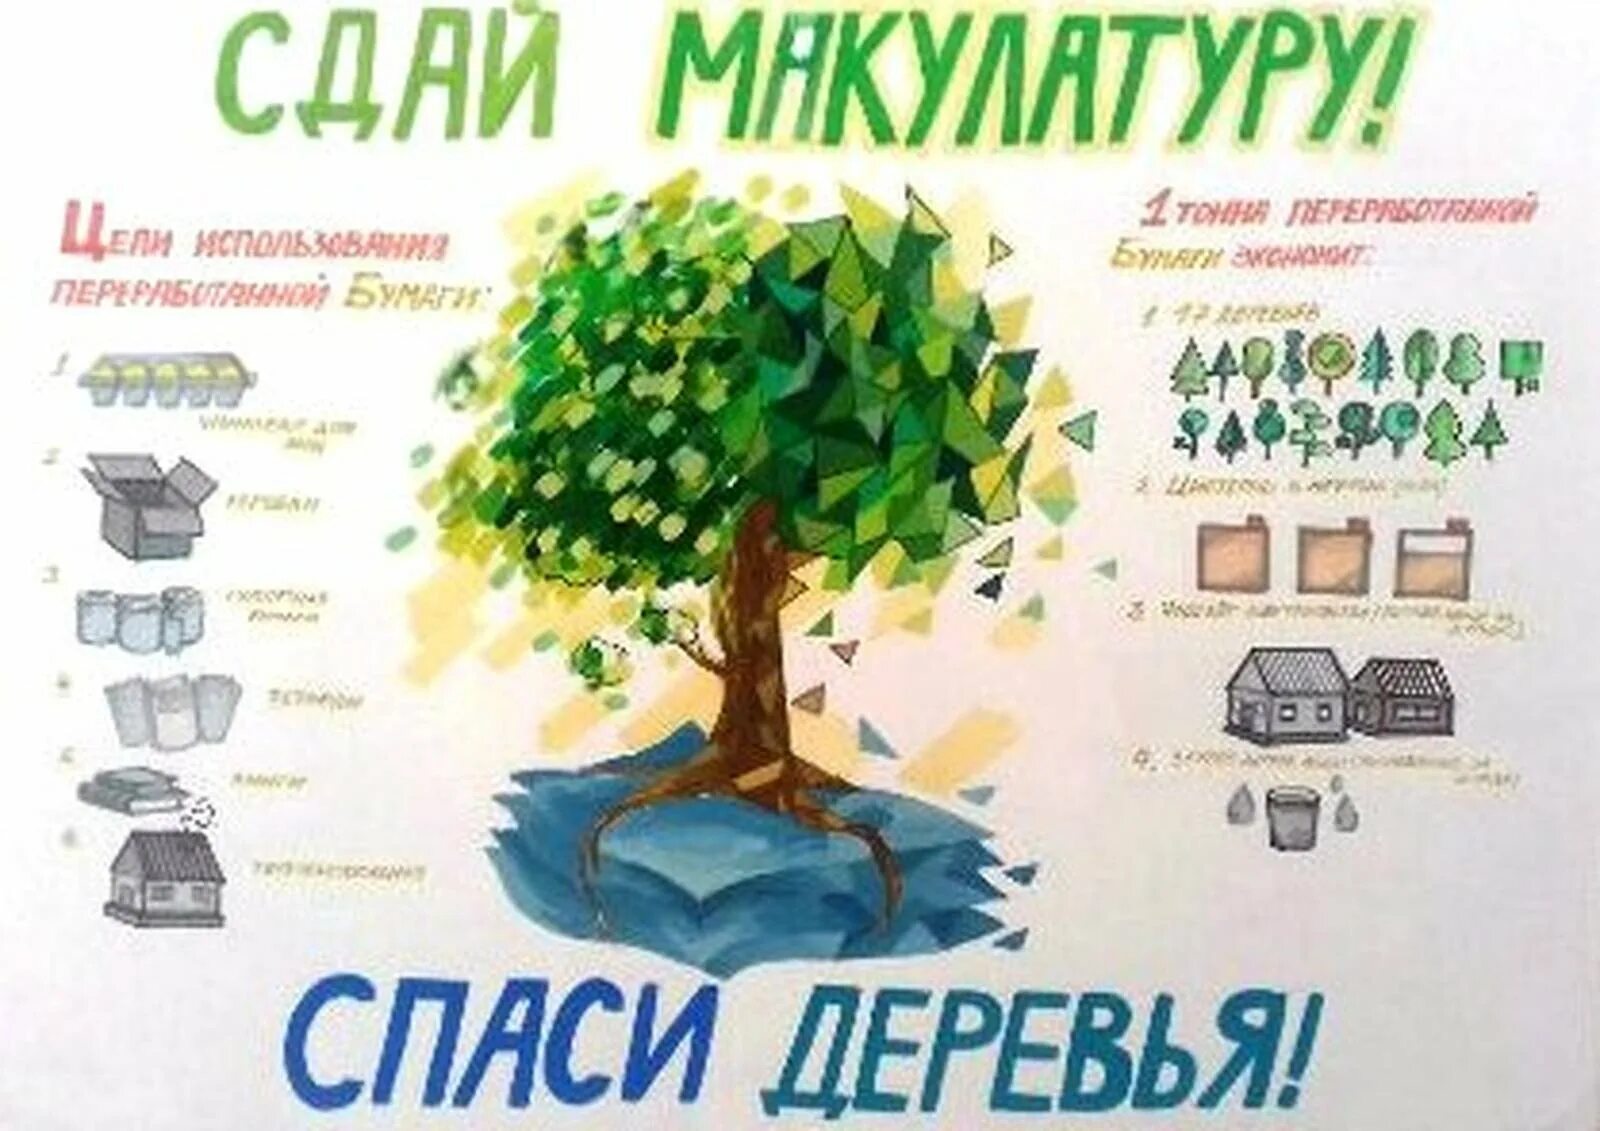 Как можно спасти дерево. Макулатура плакат. Сбор макулатуры. Сбор макулатуры плакат. Спаси дерево.